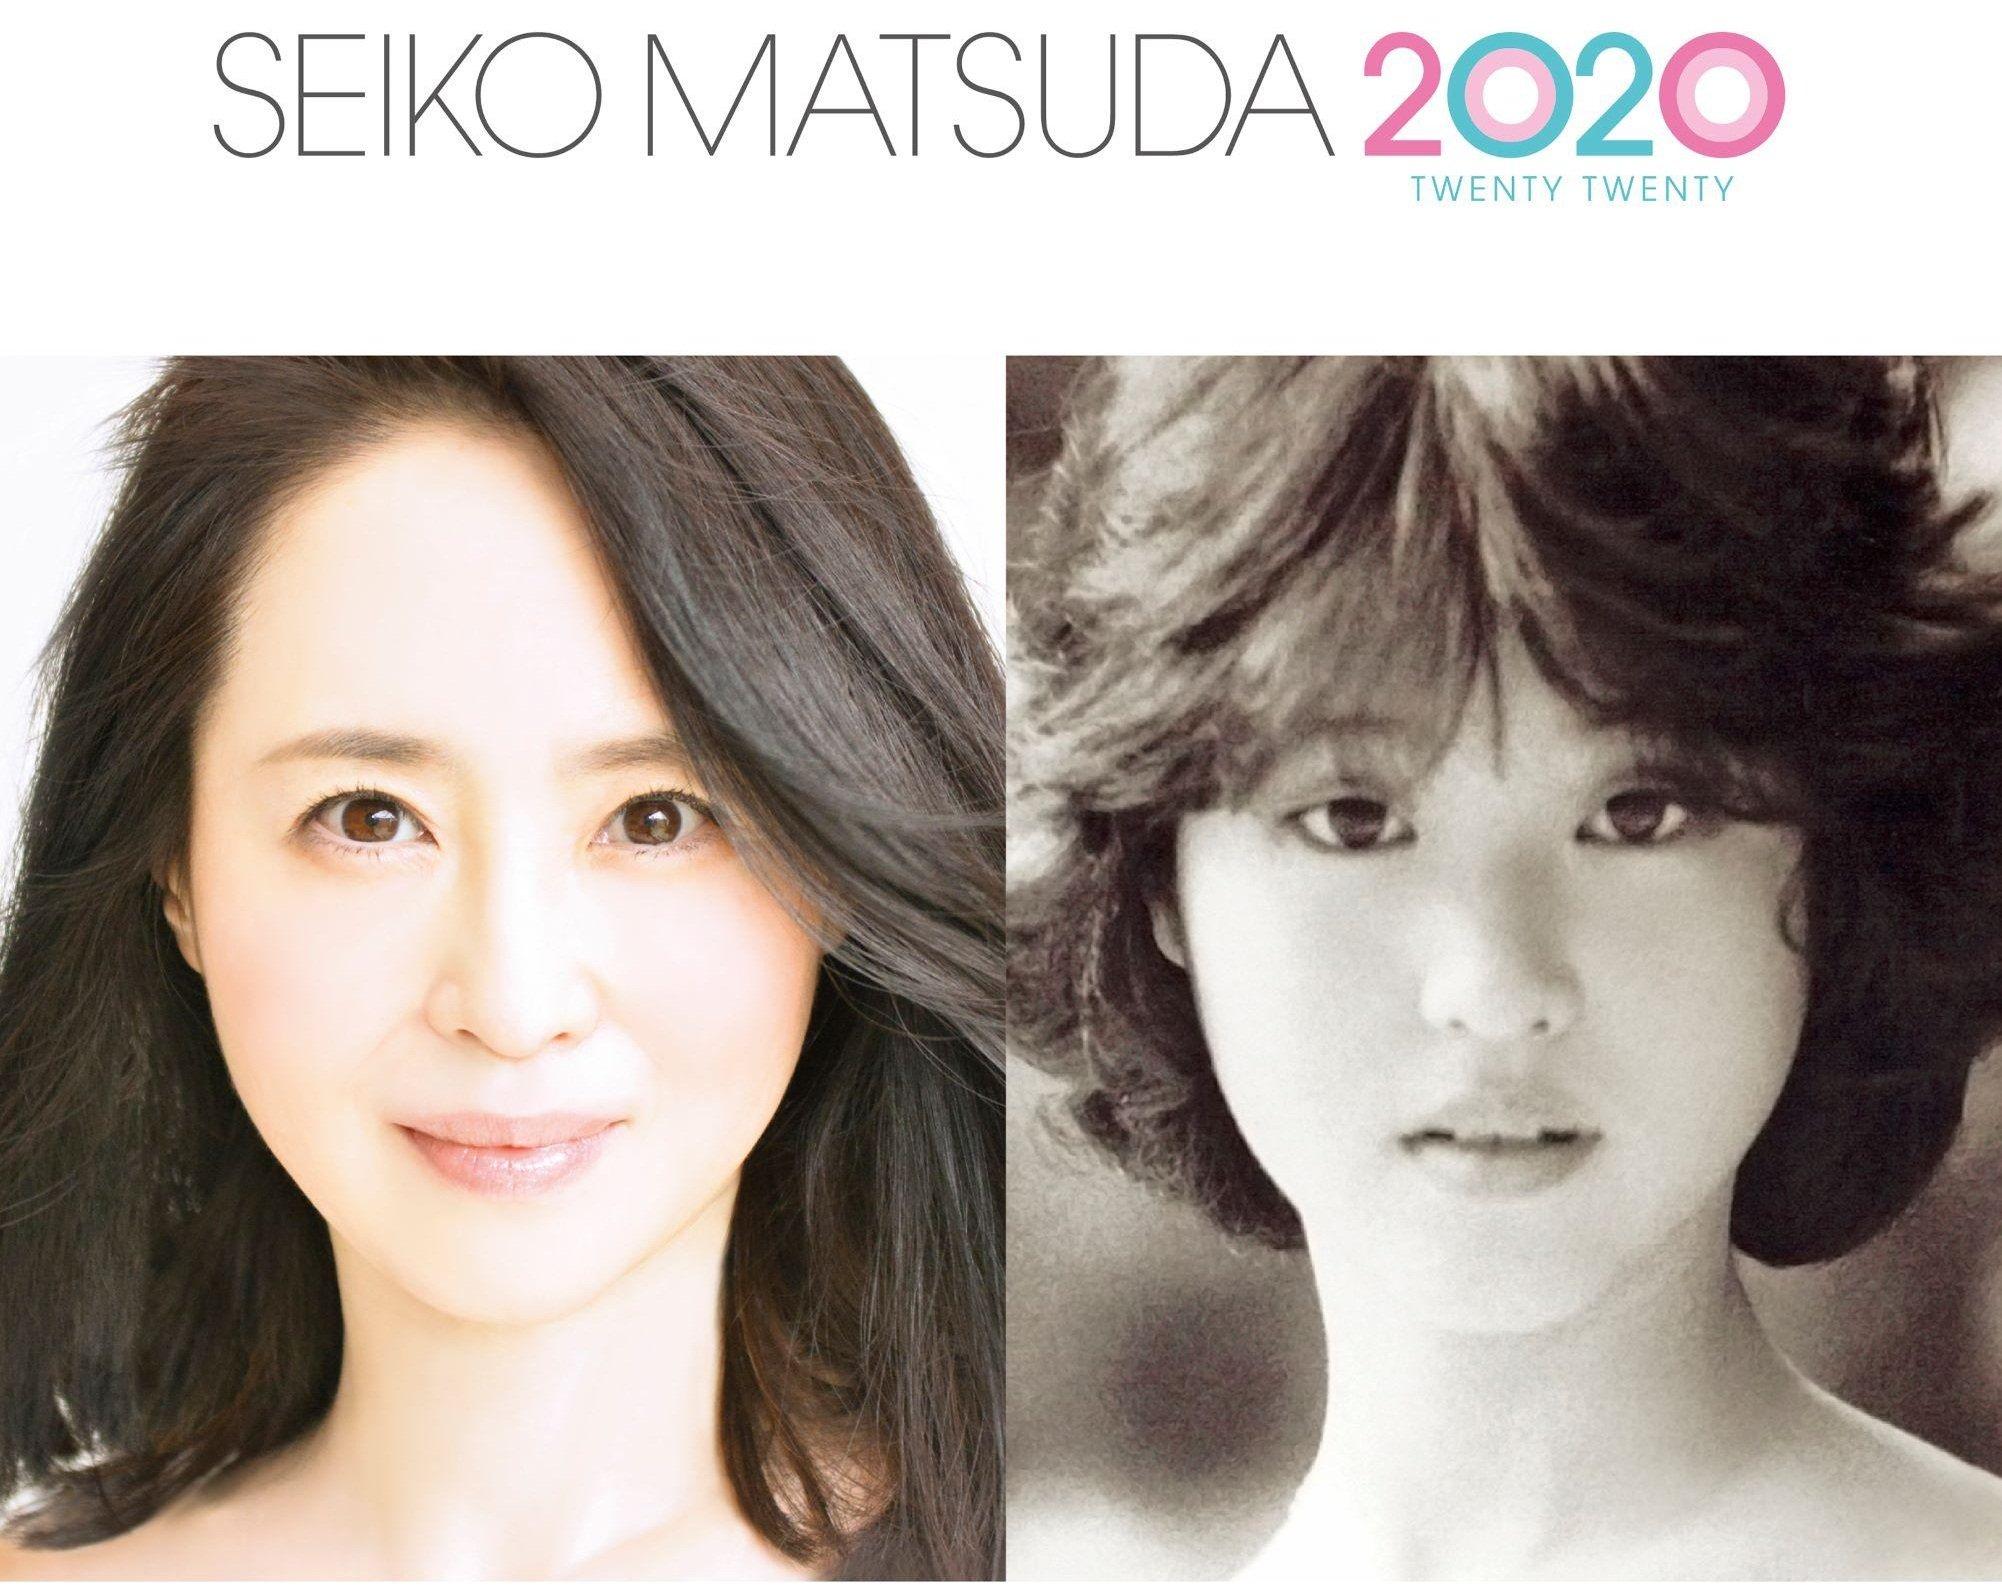 "Thần tượng vĩnh cửu" Matsuda Seiko giữ ngôi nữ vương trong bảng xếp hạng 20 nữ idol Nhật Bản vĩ đại nhất lịch sử do người hâm mộ bình chọn. (Nguồn: Internet)